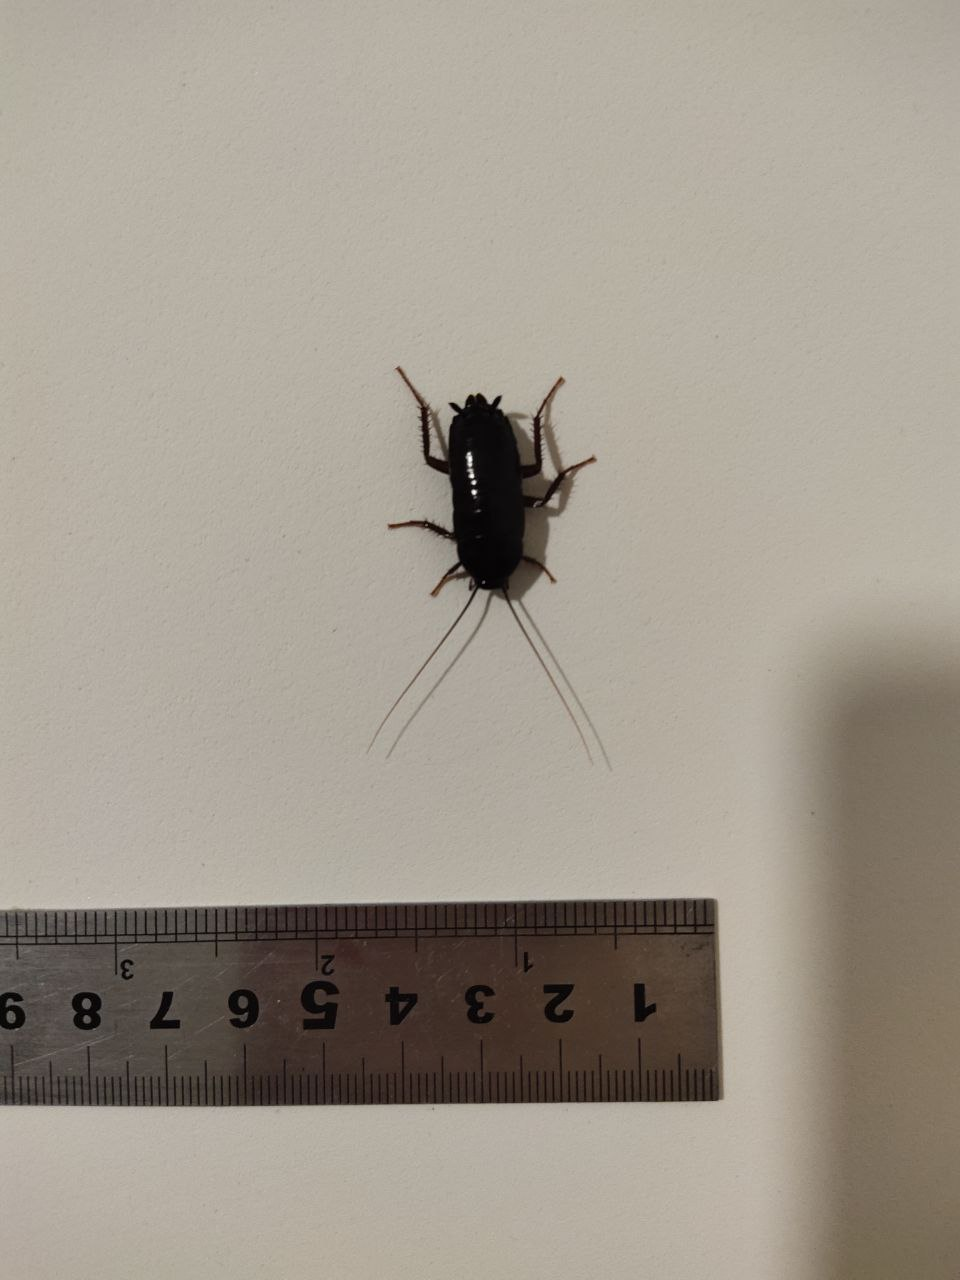 Чёрный Жук похожий на таракана. Жуки похожие на тараканов. Черный жучок похожий на таракана. Чёрные жуки в квартире похожие на тараканов.